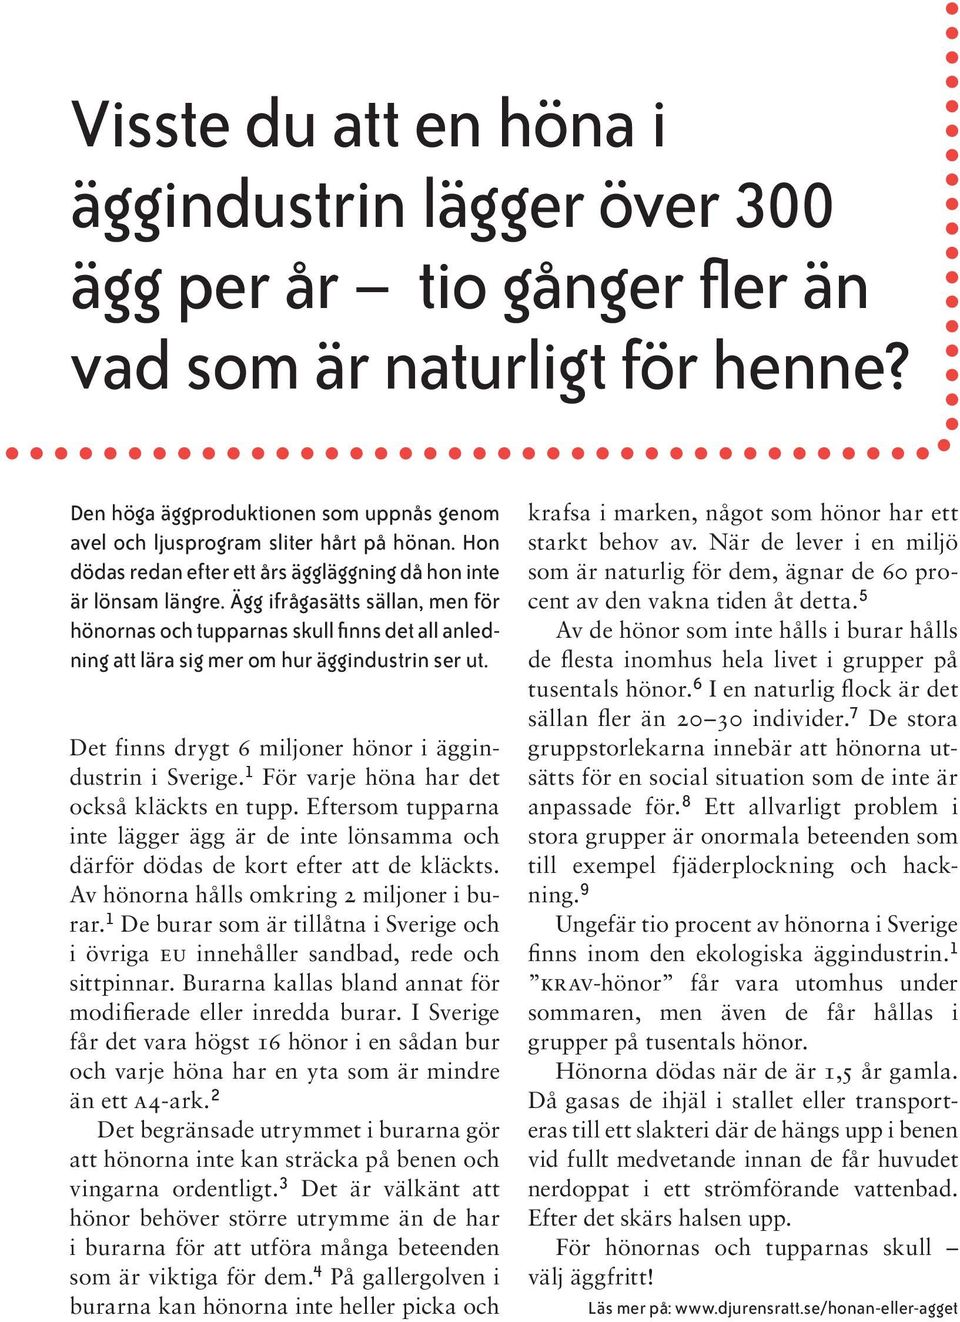 Ägg ifrågasätts sällan, men för hönornas och tupparnas skull finns det all anledning att lära sig mer om hur äggindustrin ser ut. Det finns drygt 6 miljoner hönor i äggindustrin i Sverige.